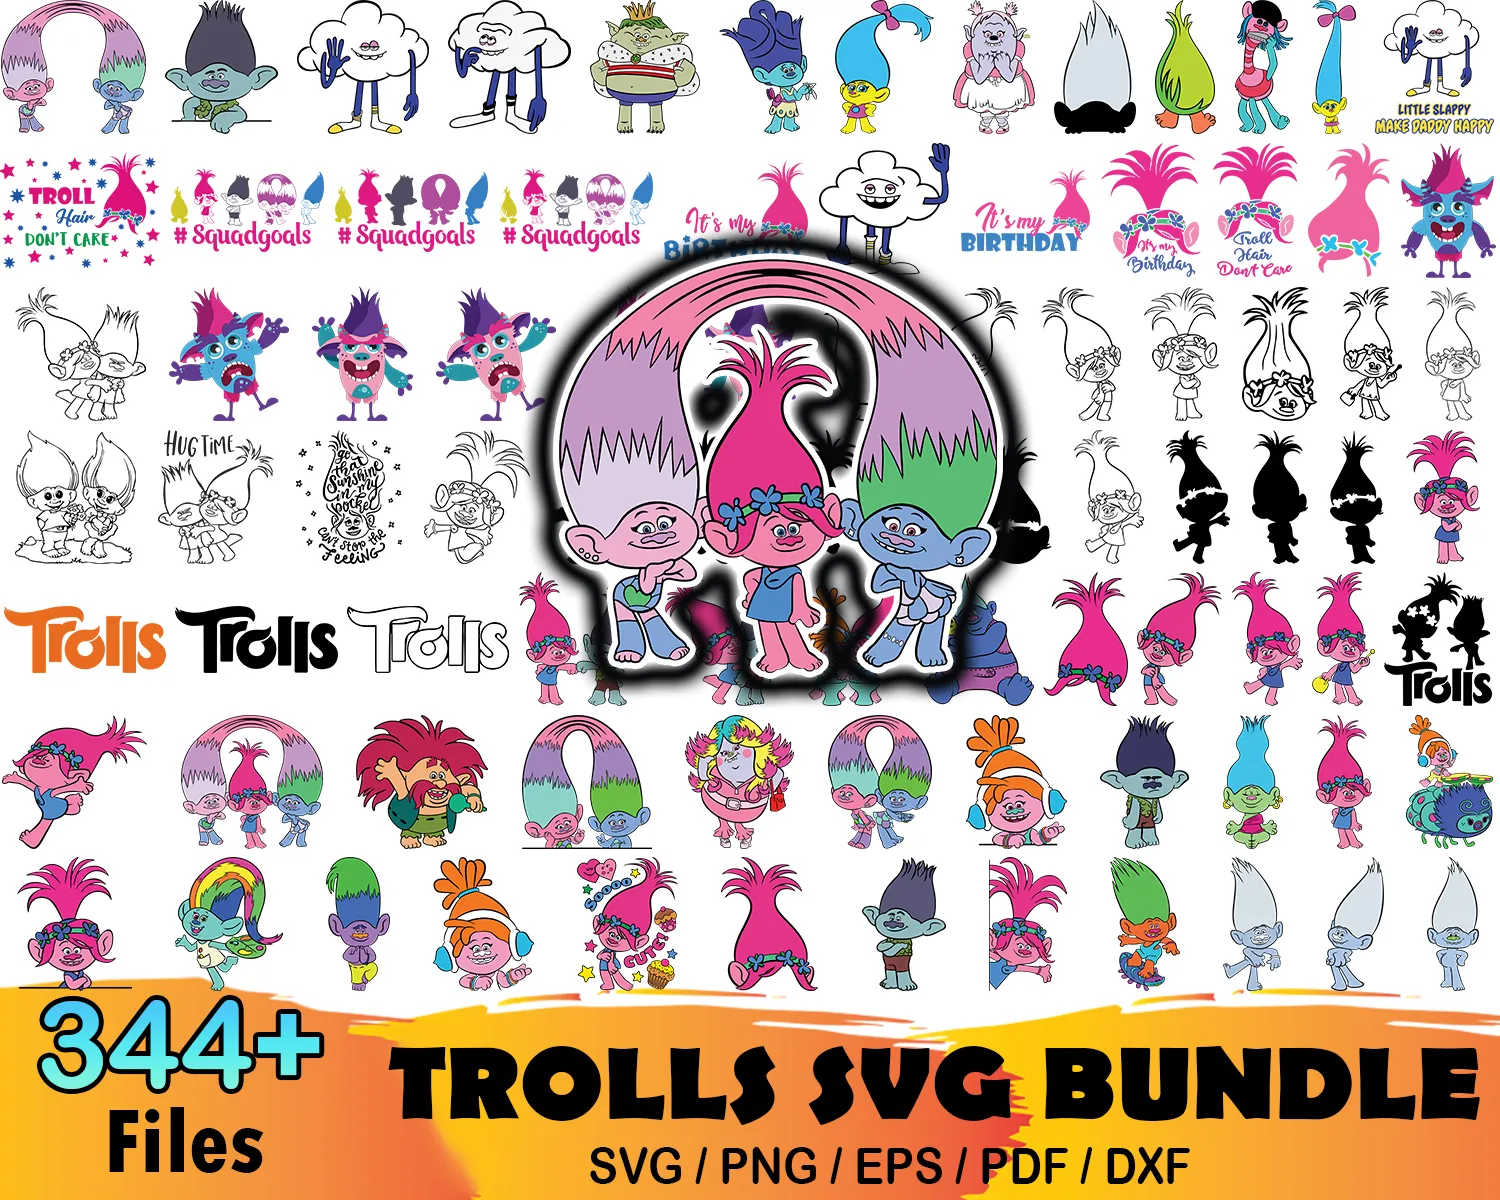 Bundle of 12 Trolls Grab & Go Play Packs - 6 each of 2 artwork designs –  KaleidoQuest